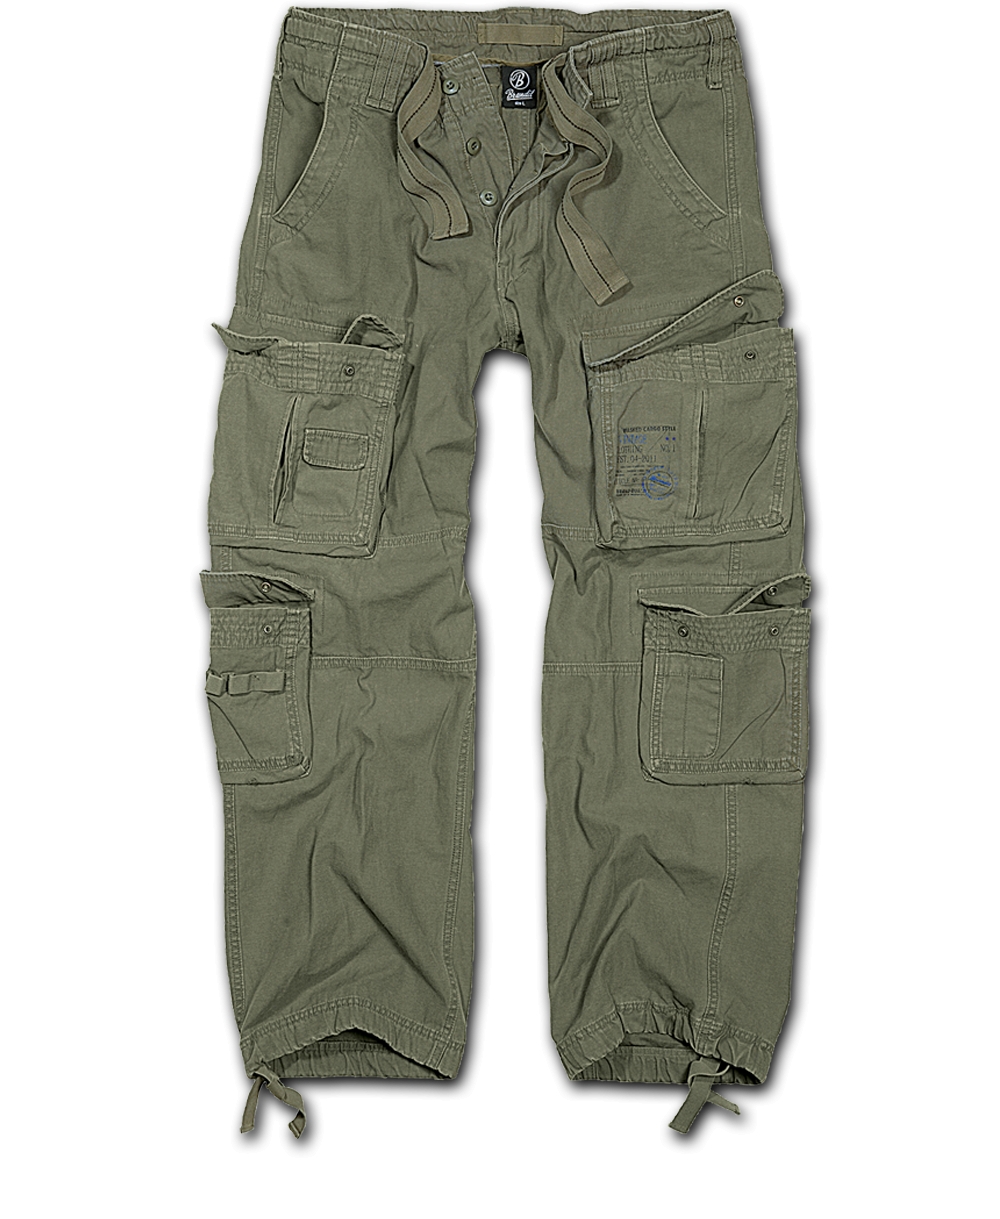 Kalhoty Brandit Pure Vintage - olivové, 3XL